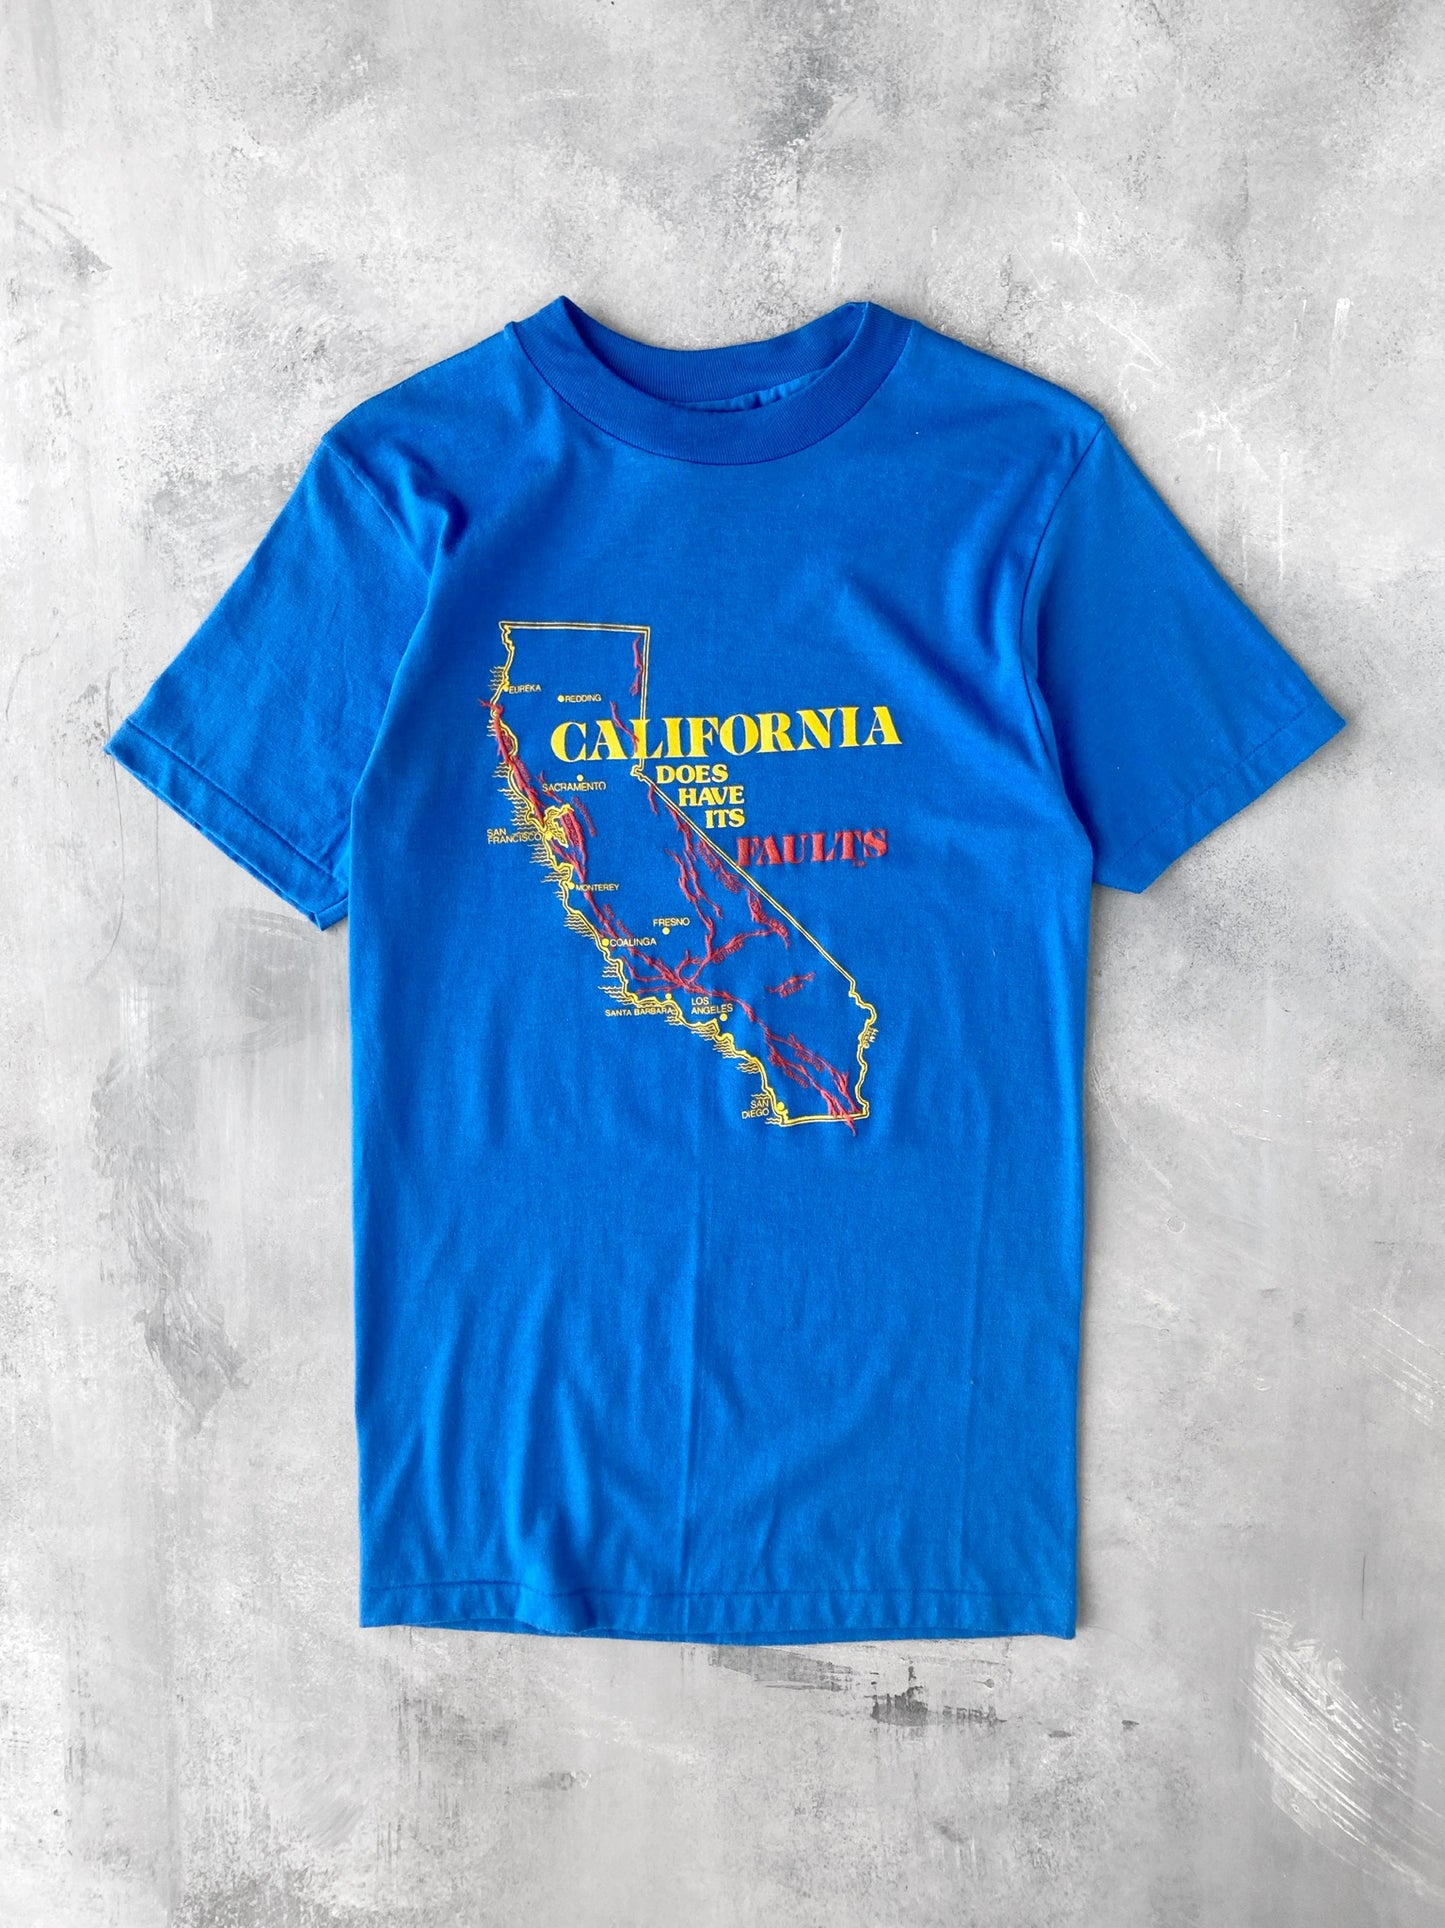 California has its Faults T-Shirt 80's - XS